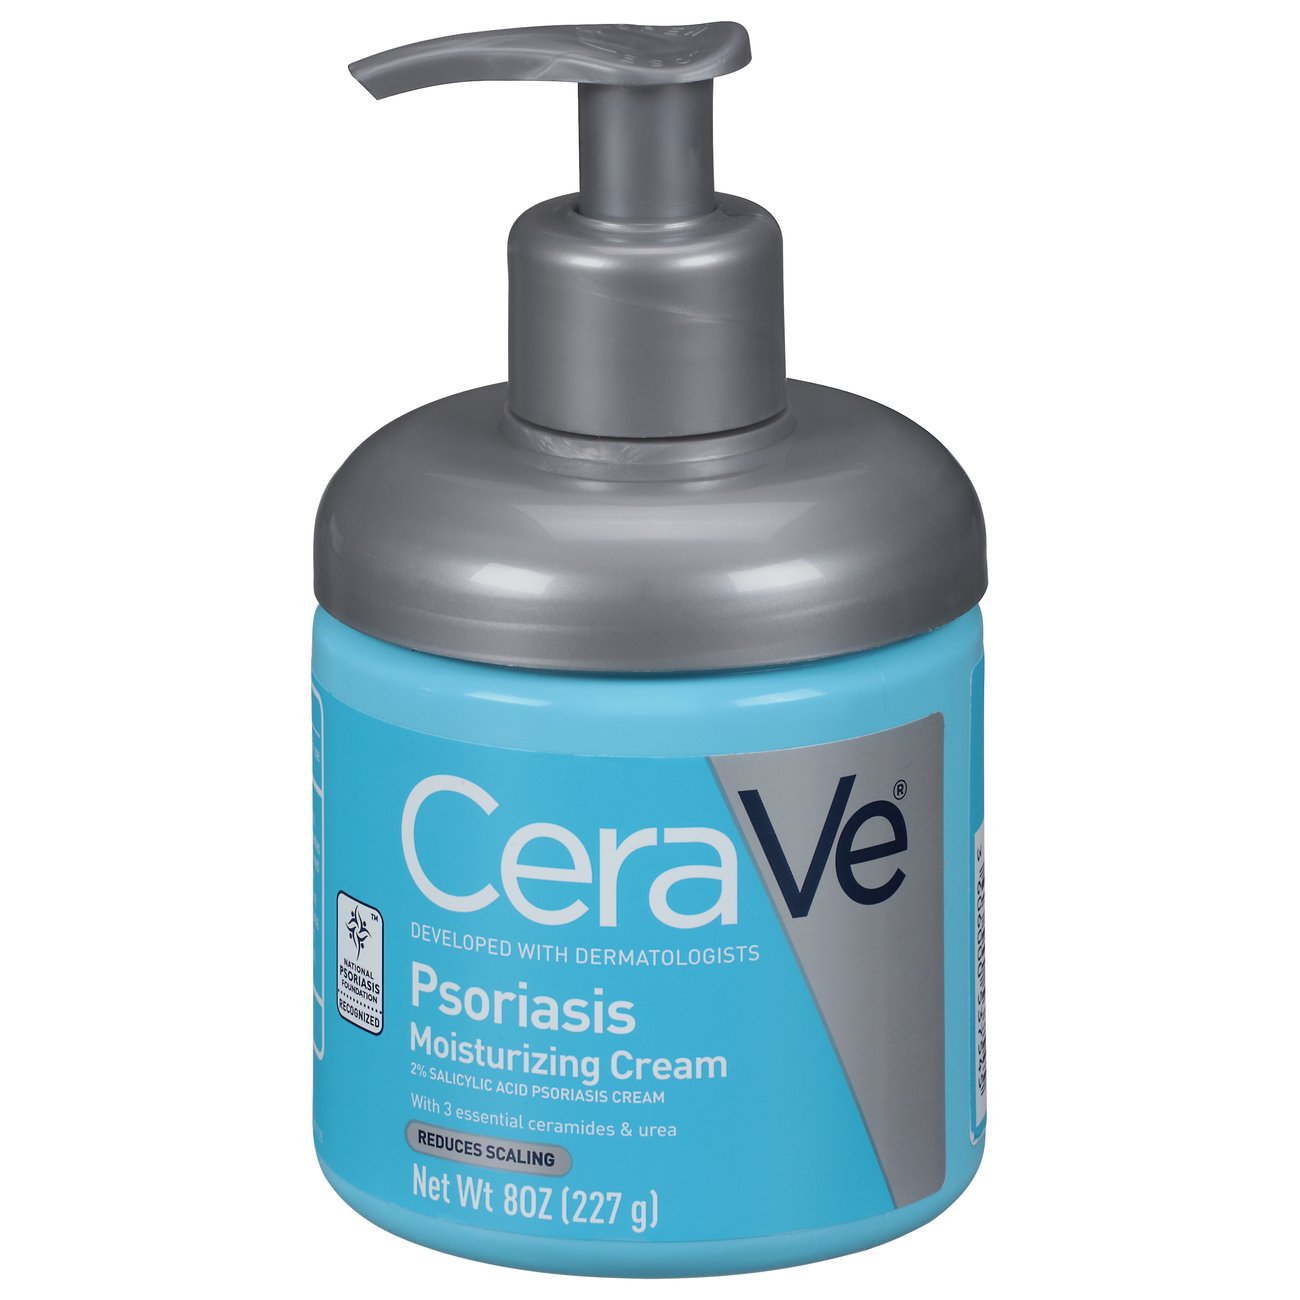 cerave psoriasis moisturizing cream price)